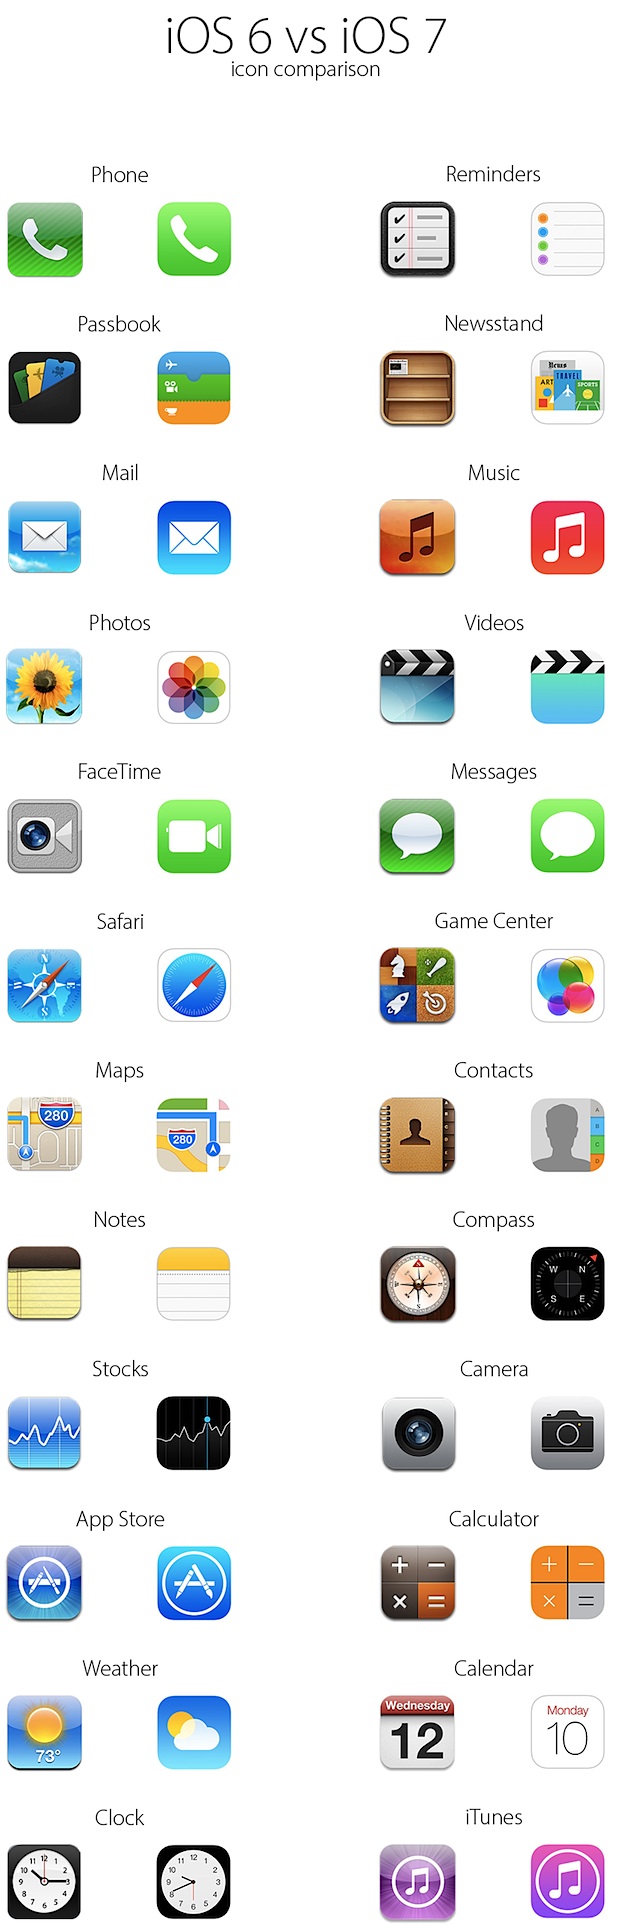 Iconos de iOS 7 vs iconos de iOS 6